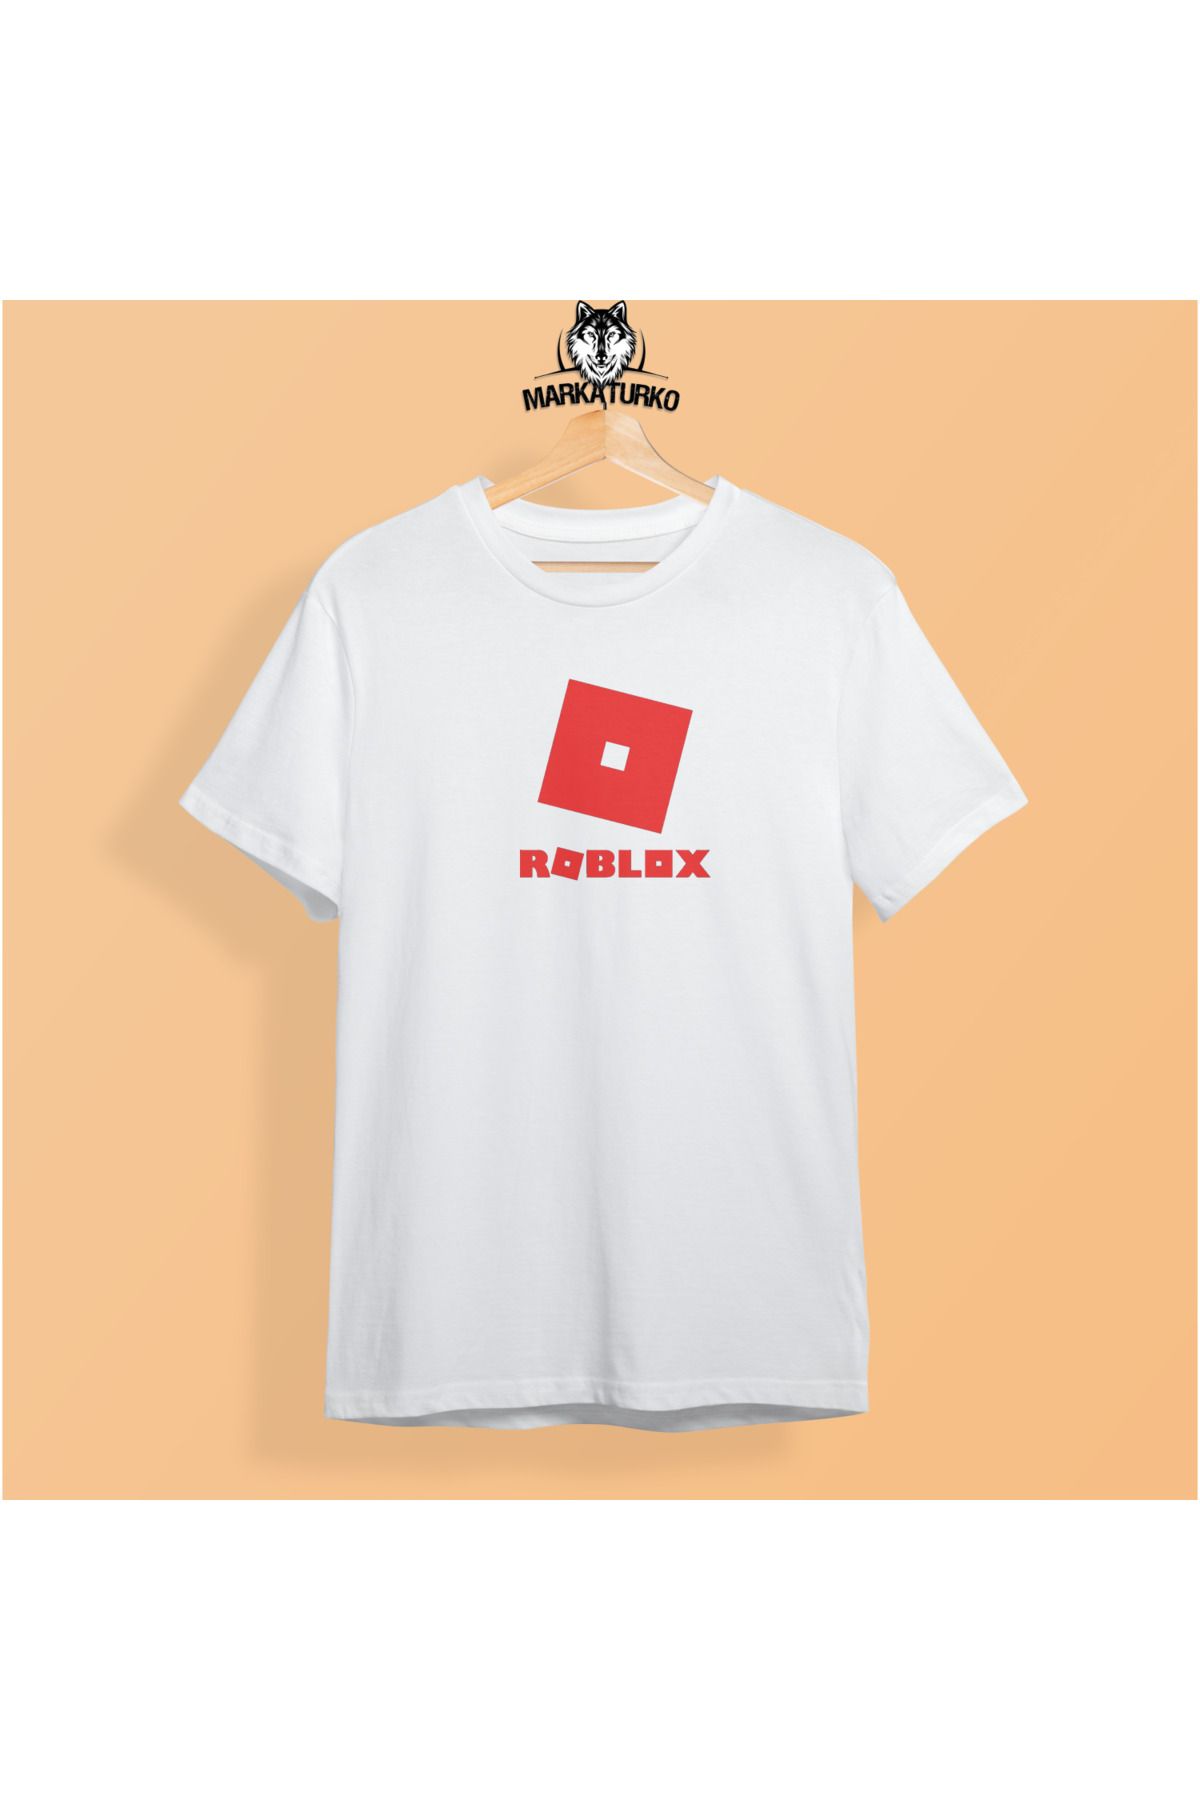 MarkaTurko Roblox-306-b187 Baskılı Beyaz Oversize Özel Tasarım Pamuklu Unisex T-shirt